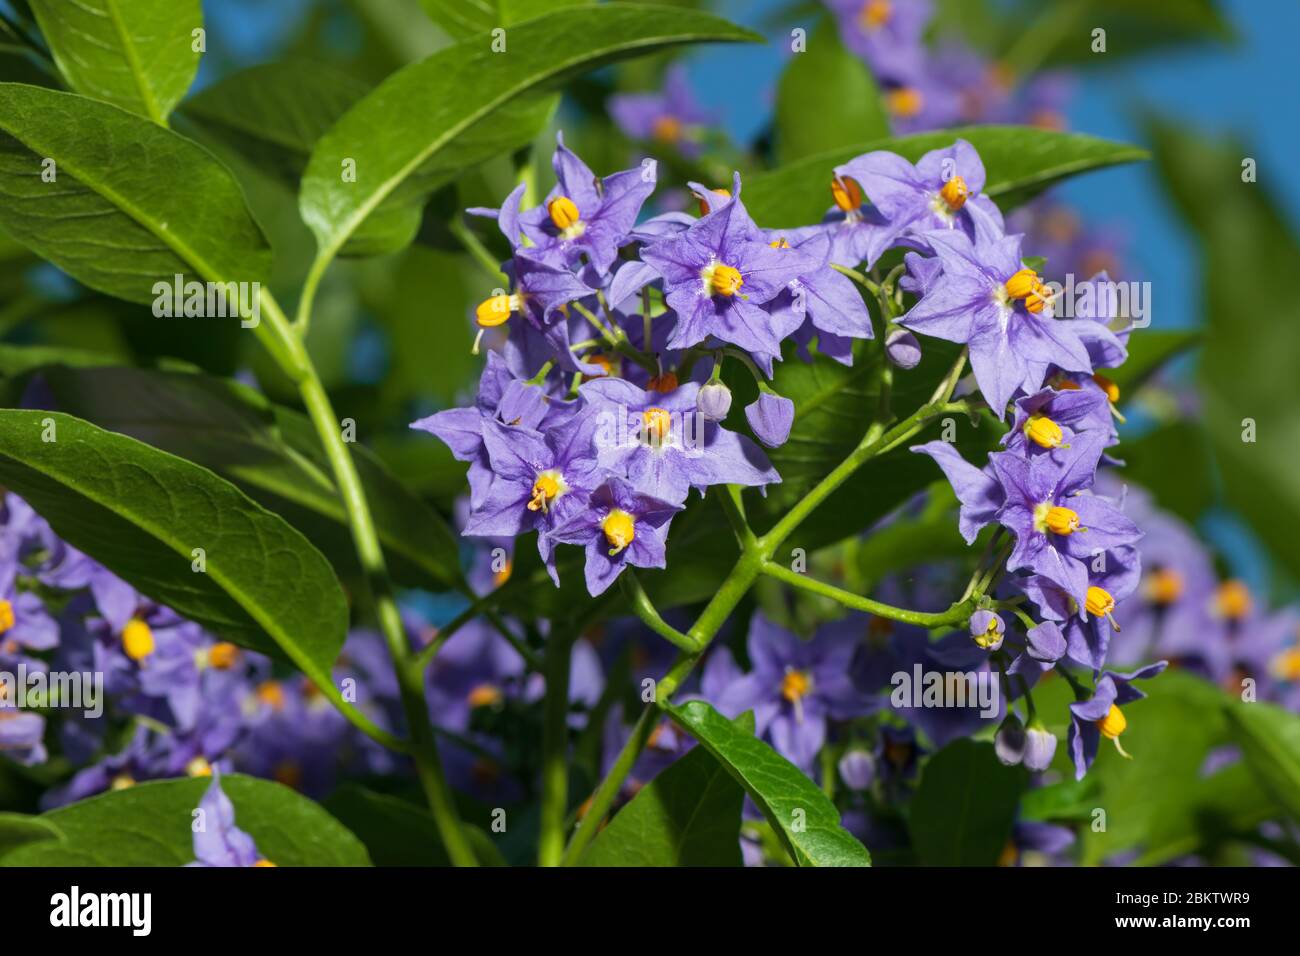 Fiori viola e gialli di patata cilena o Solanum crispum Glasnevin. Foto Stock